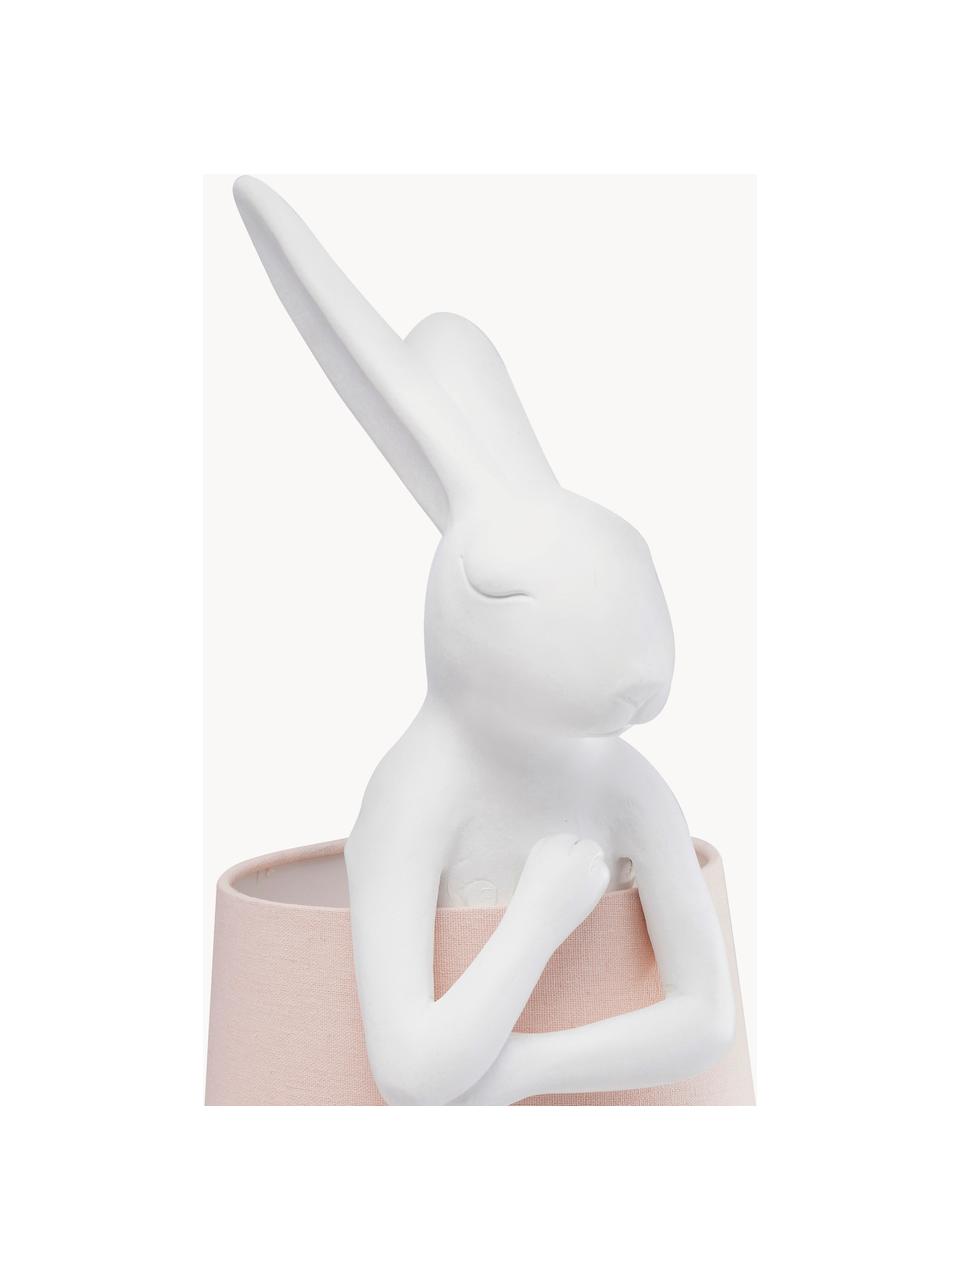 Grosse Design Tischlampe Rabbit, Lampenschirm: Leinen, Stange: Stahl, pulverbeschichtet, Weiss, Hellrosa, Ø 23 x H 68 cm